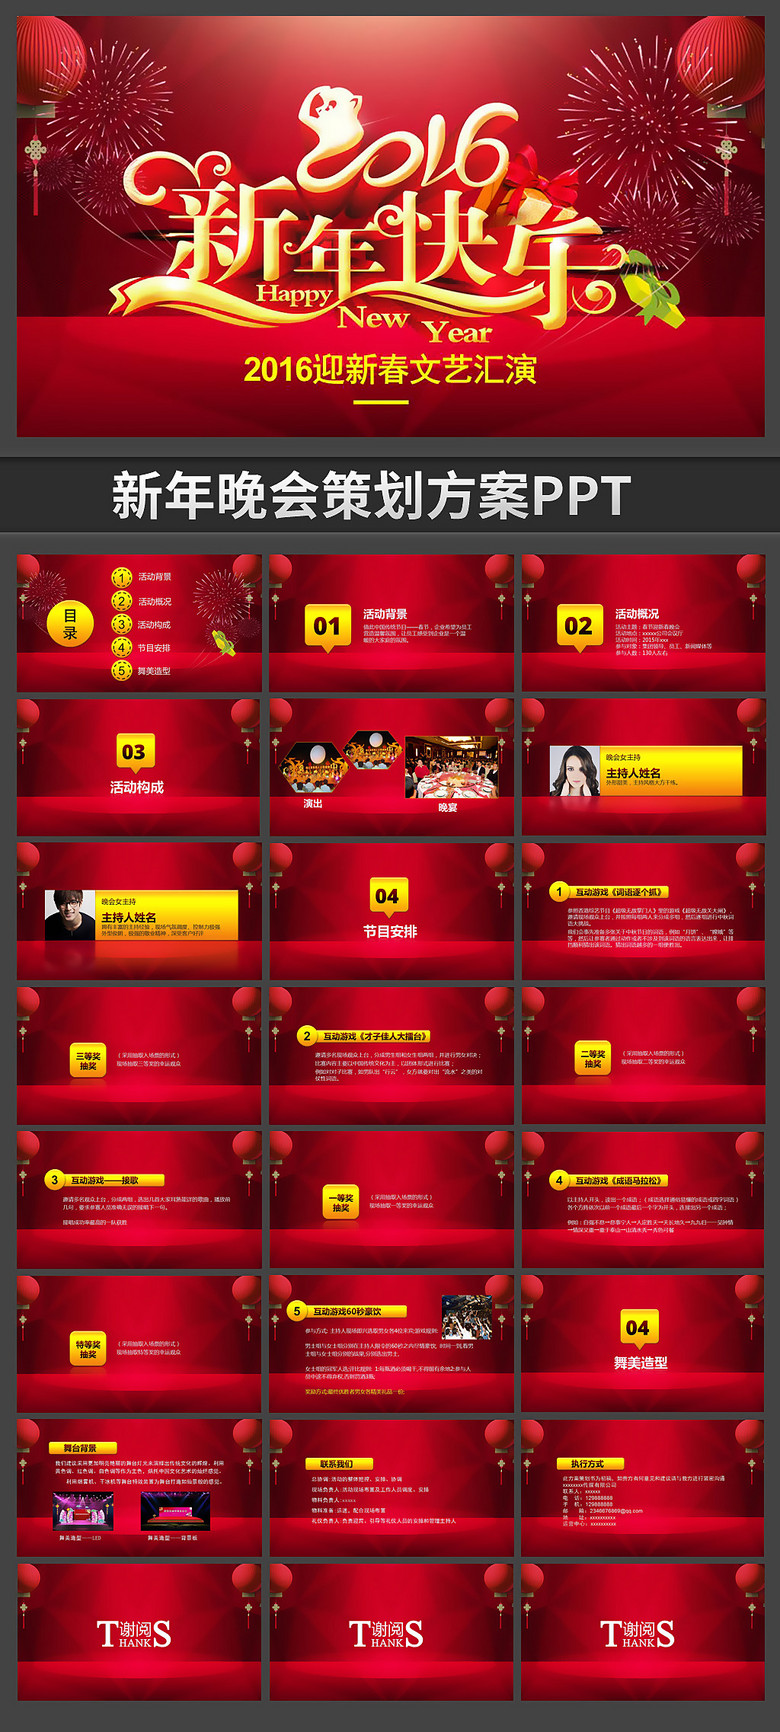 2016年新春晚会节目策划ppt模版模板下载(图片